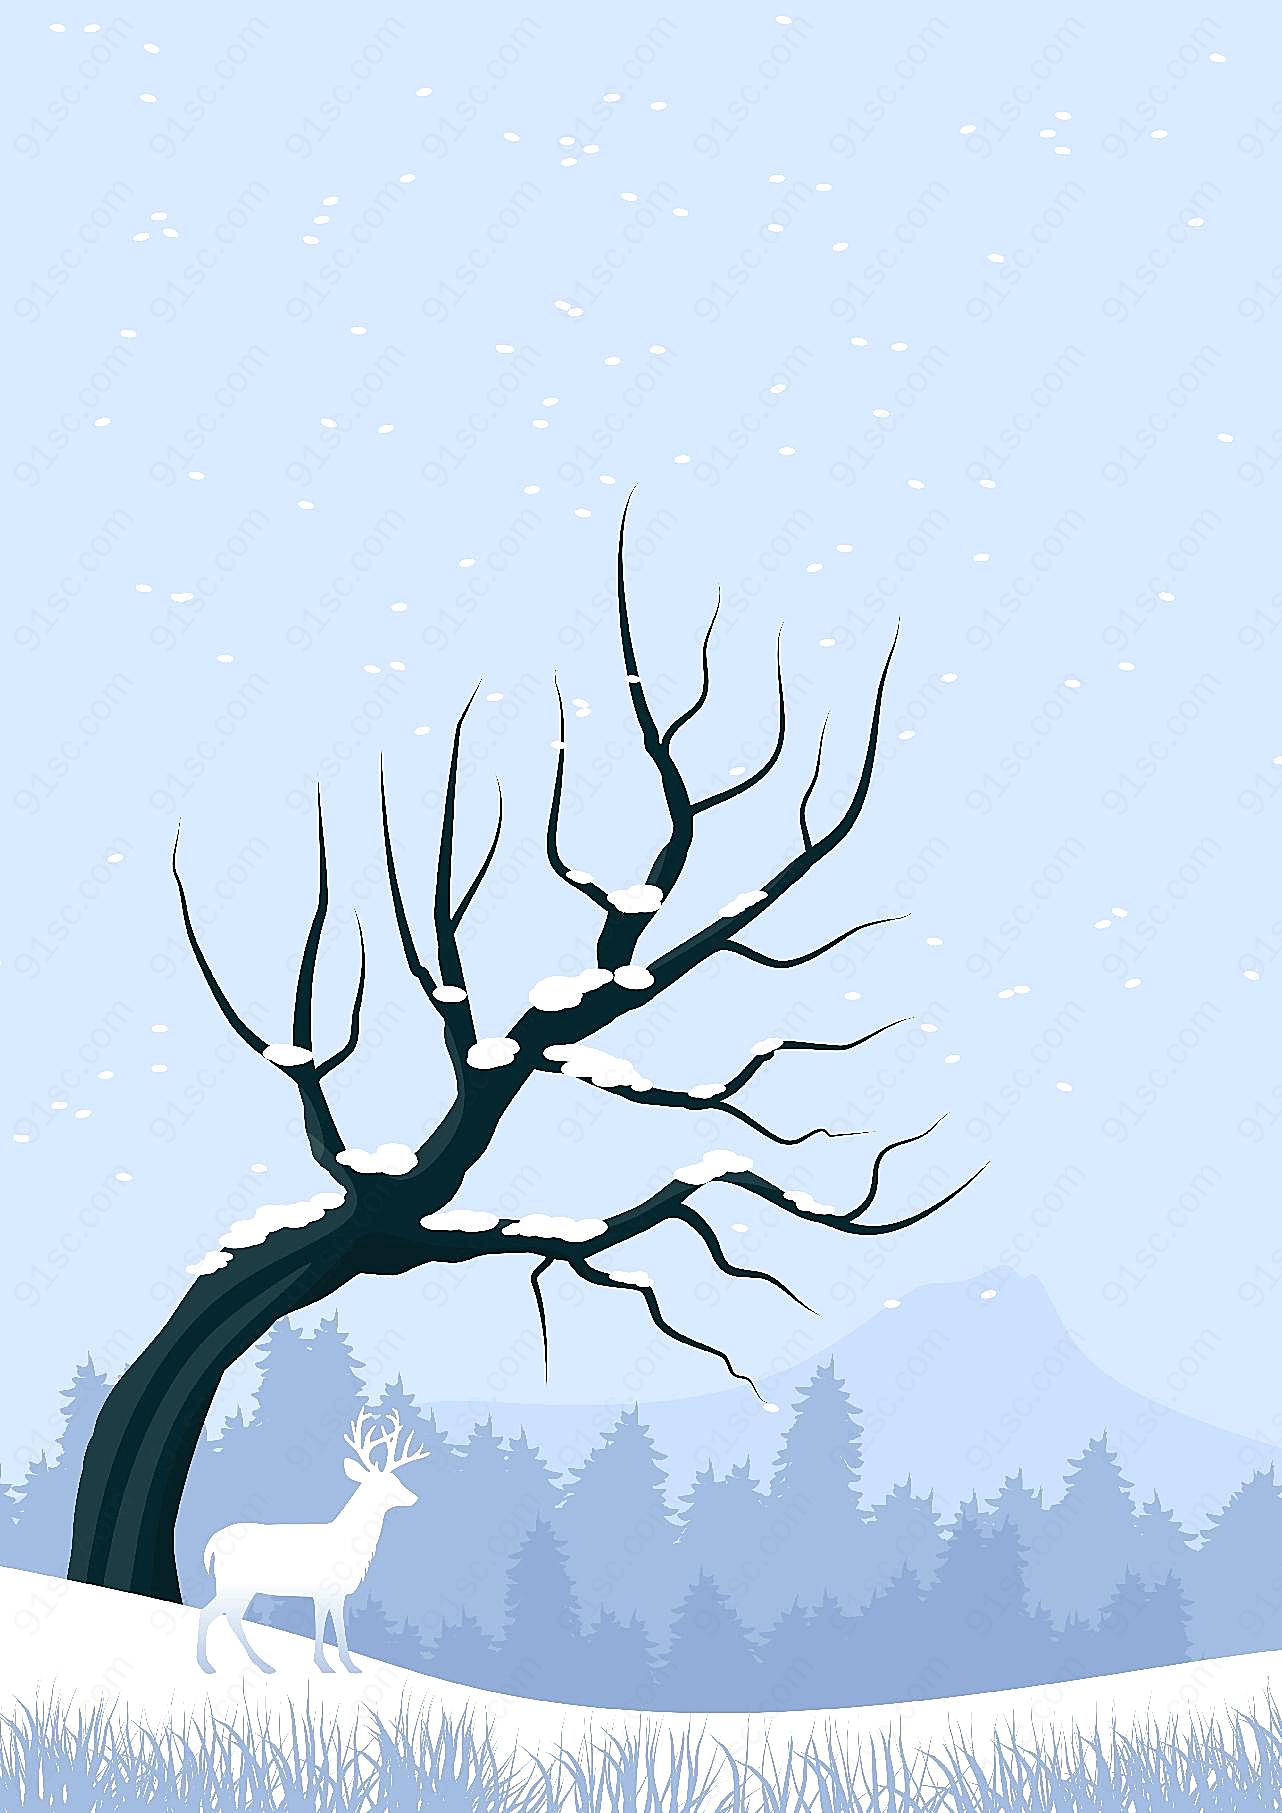 冬雪卡通封面设计图片摄影